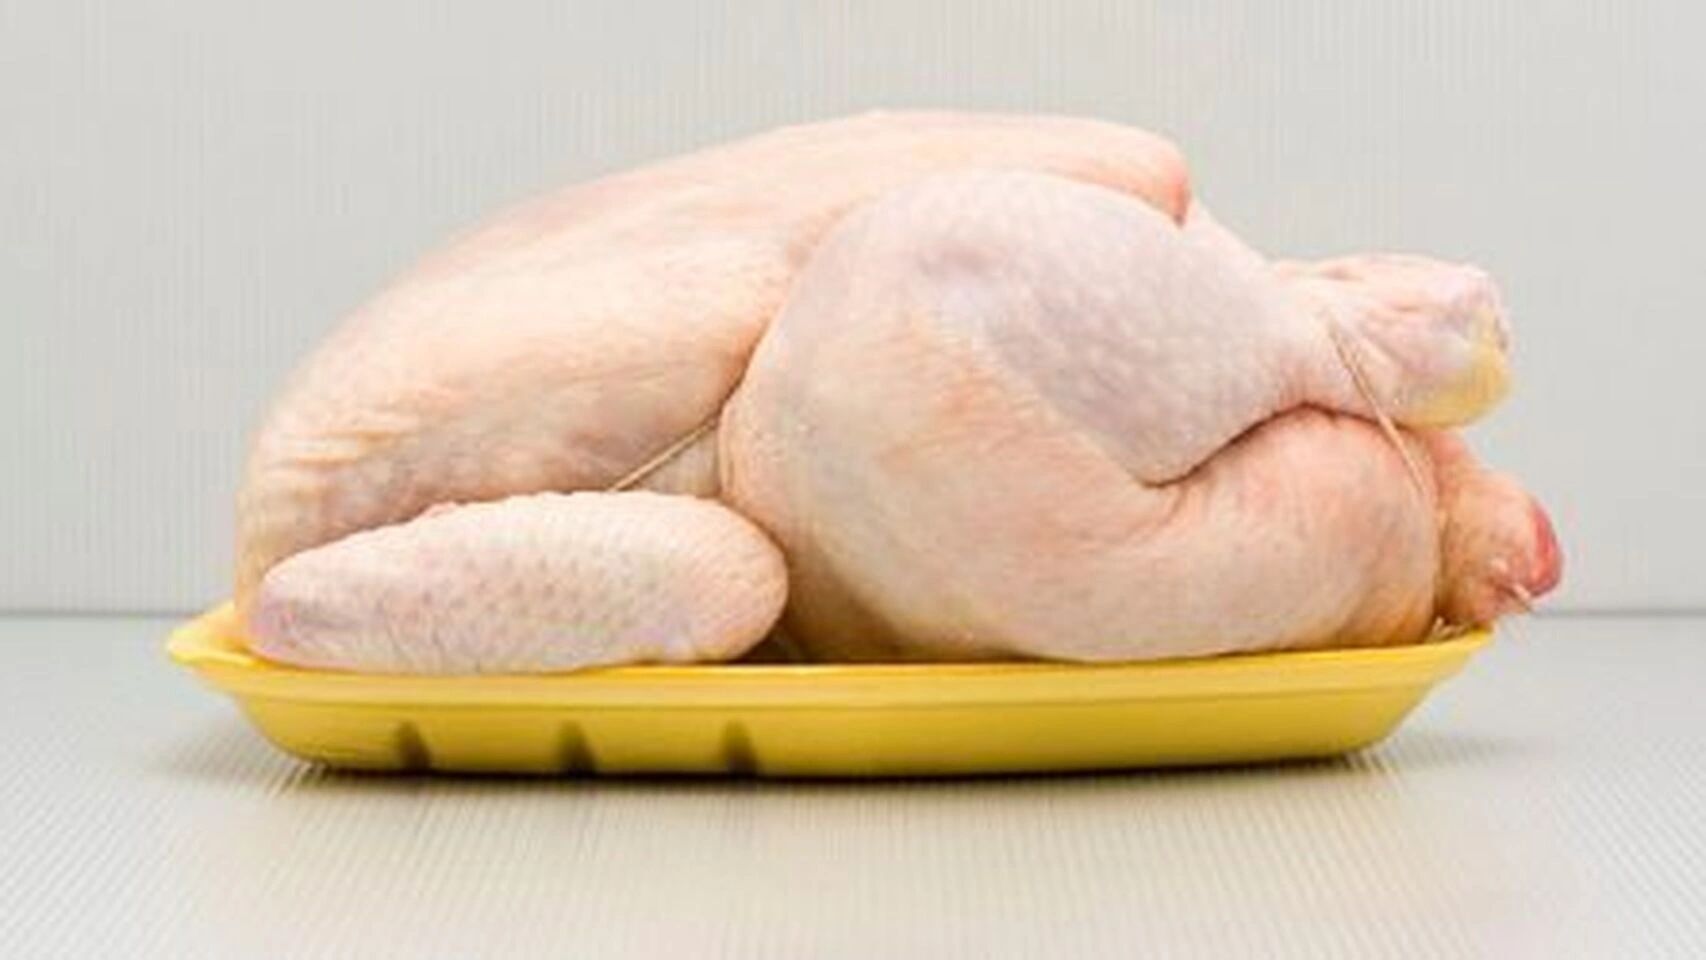 La Carne De Pollo Es Una De Las Mas Saludables Del Mercado 9609